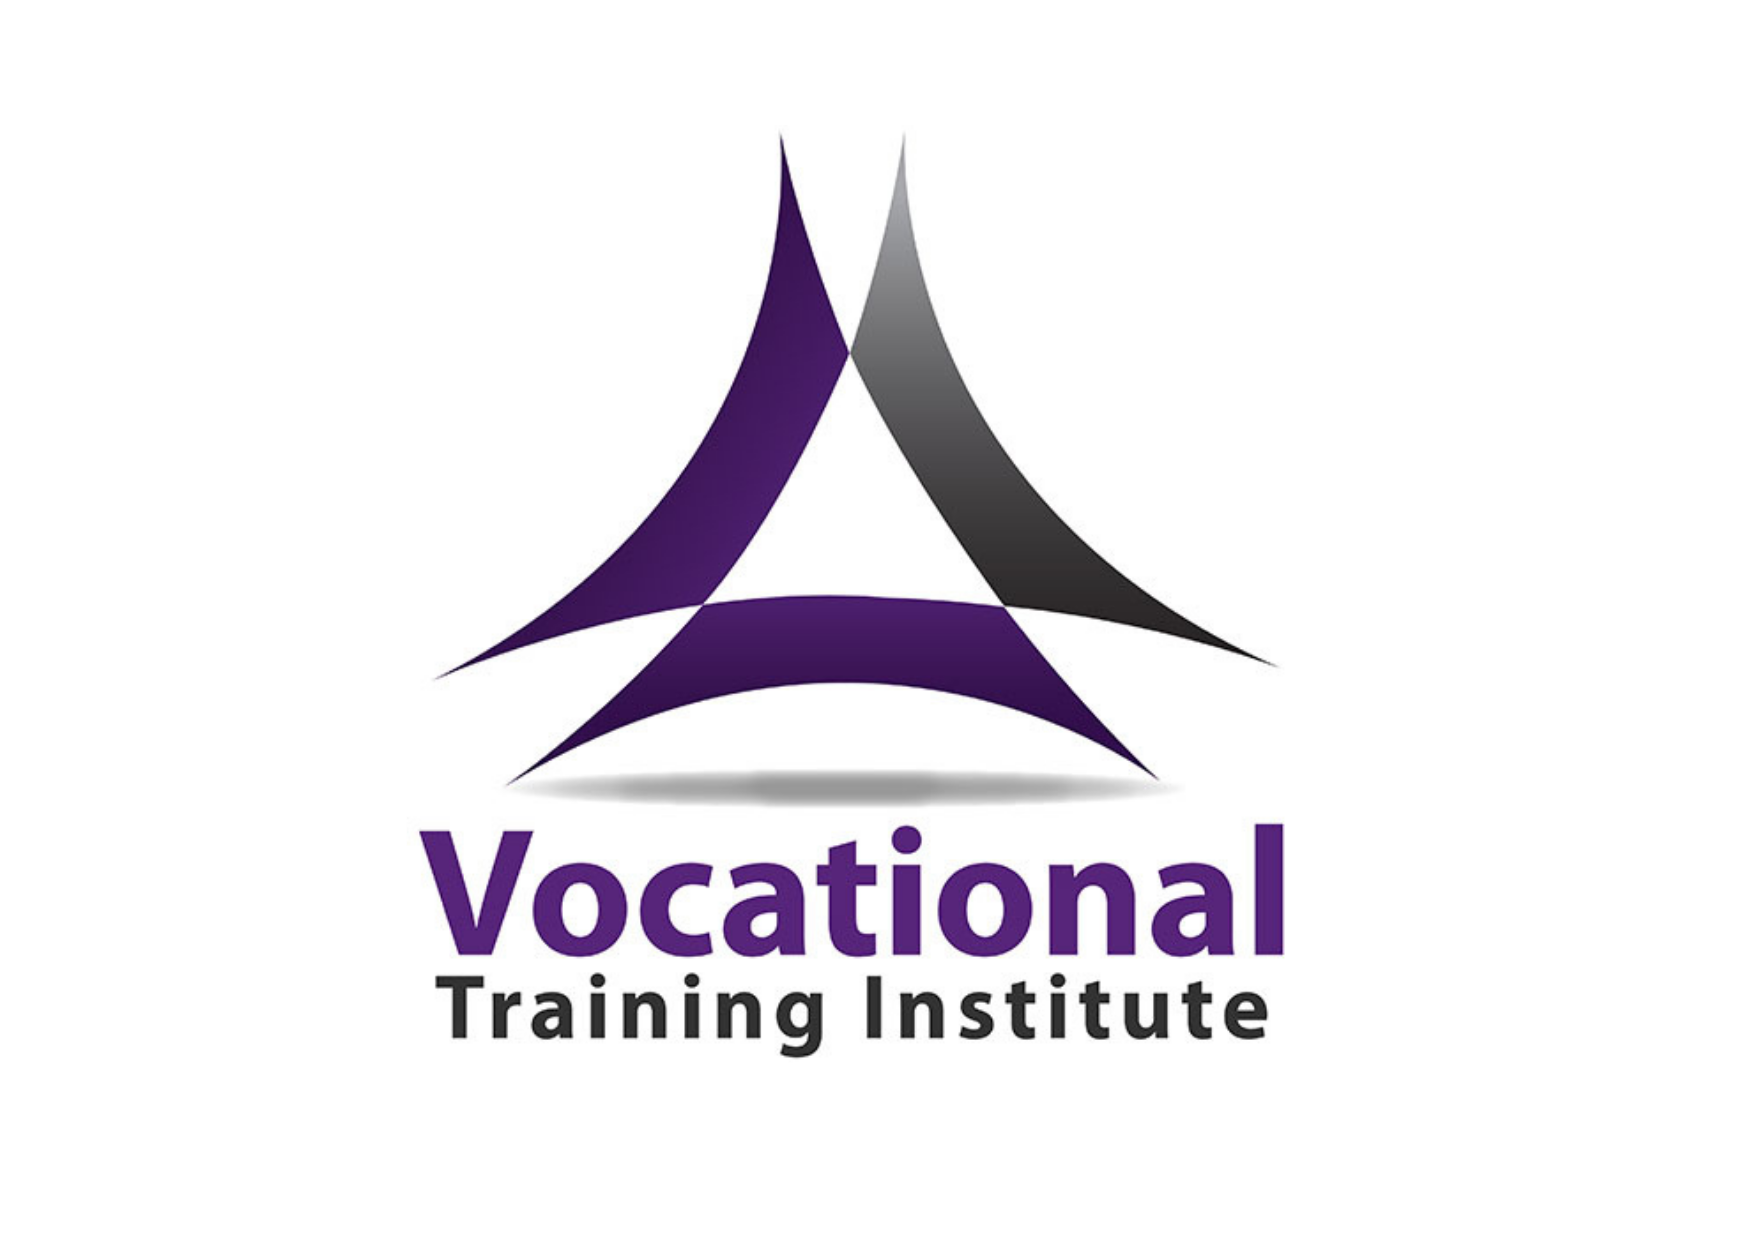 Vocational Training Institute 